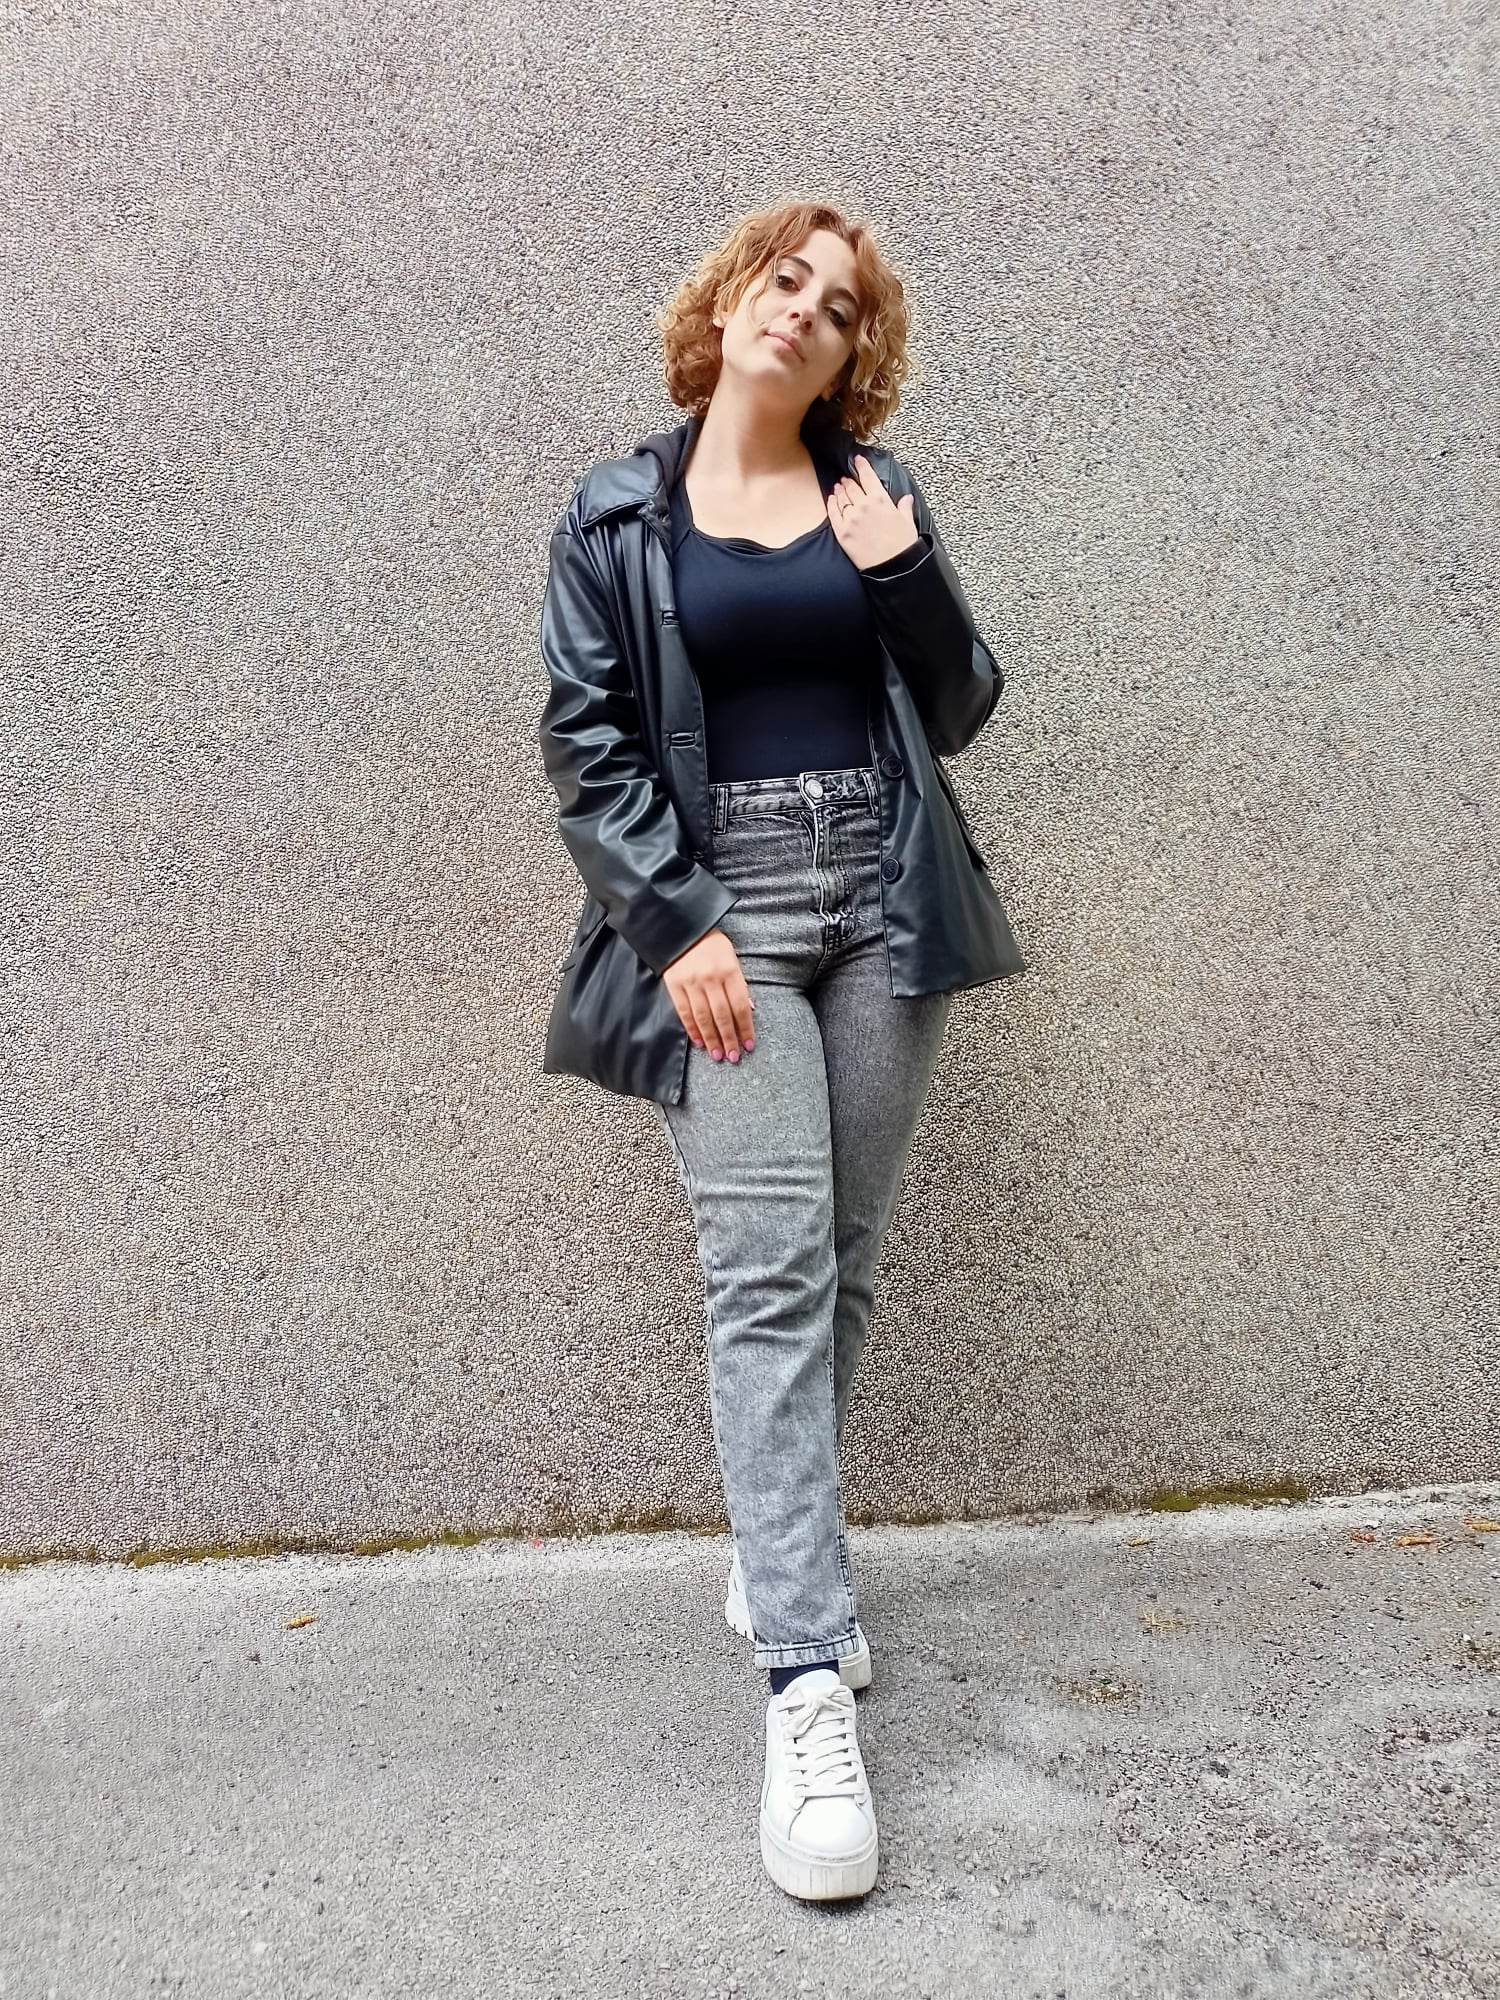 Mom jeans + body + giacca Zara 